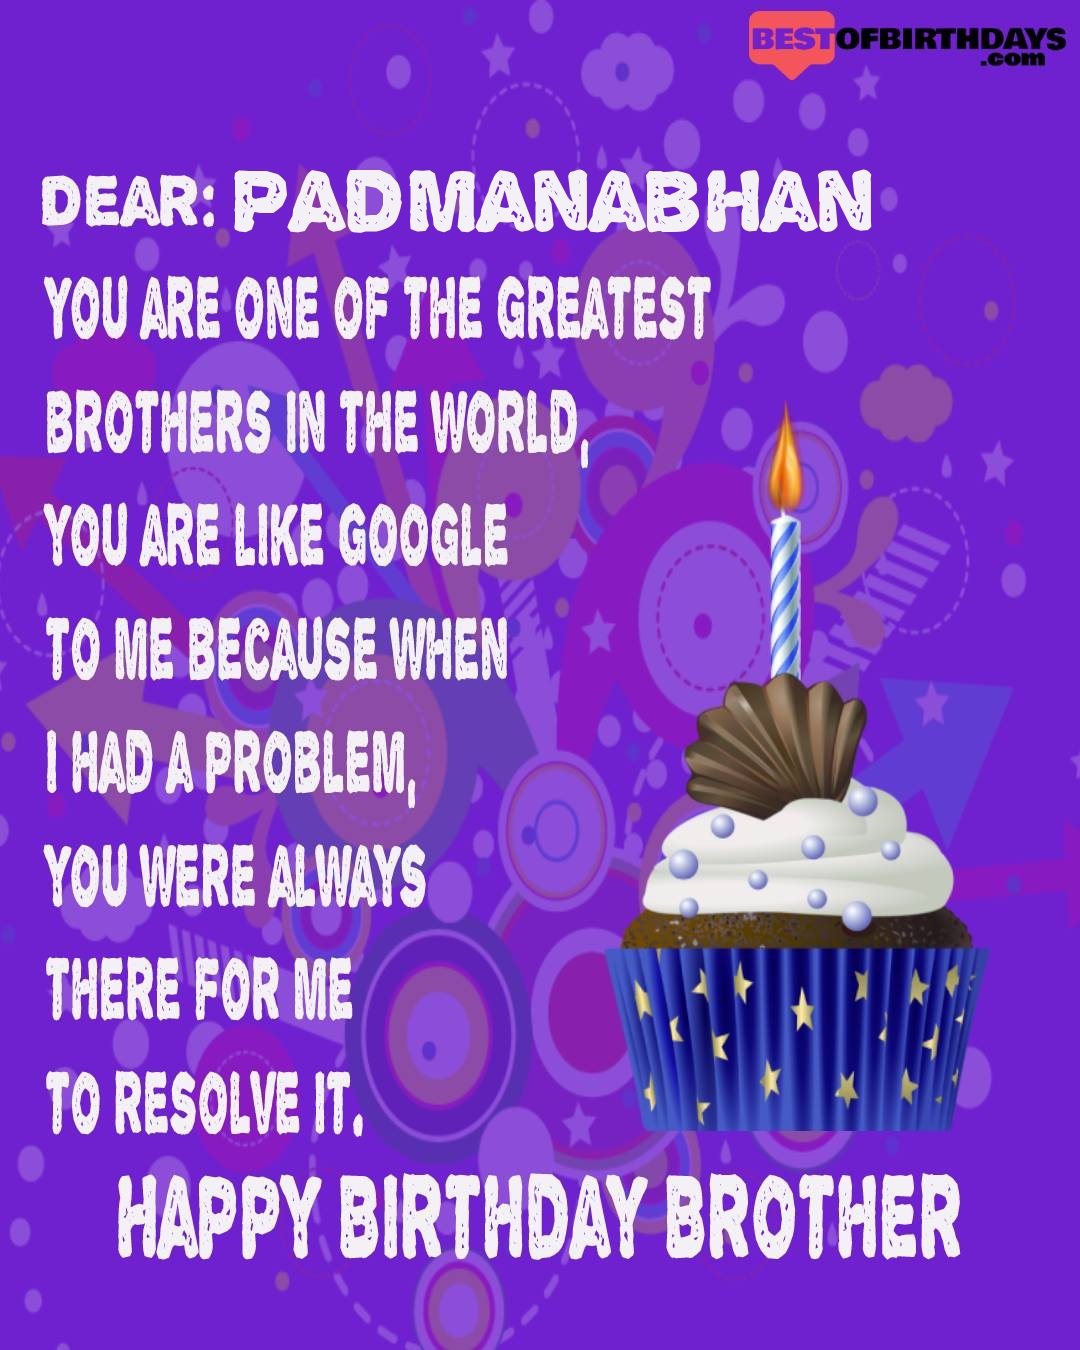 Happy birthday padmanabhan bhai brother bro